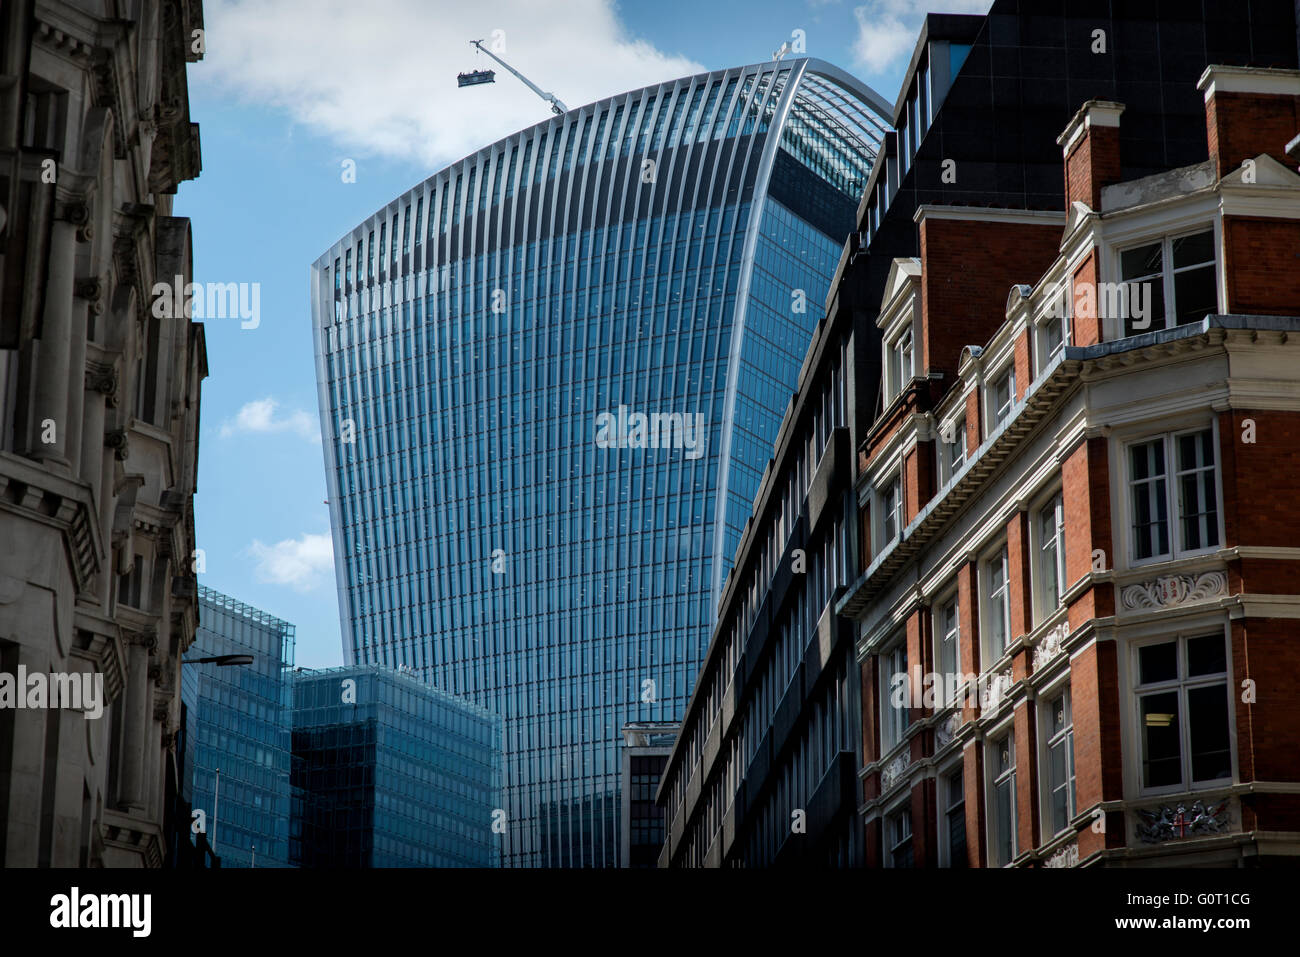 City of London, London, England, UK. 19. April 2016 Walkie Talkie Gebäude richtig bekannt als 20 Fenchurch Street ist ein kommerzieller Wolkenkratzer in London, das seinen Namen von seiner Adresse auf Fenchurch Street im historischen Bankenviertel City of London. Es hat den Spitznamen "The Walkie-Talkie" wegen seiner markanten Form. [3] der Bau wurde im Frühjahr 2014 abgeschlossen, und die obersten Etage "Sky Garden" wurde im Januar 2015 eröffnet. [4] das 34-geschossige Gebäude ist 160 m (525 ft) hoch, so dass es das fünfte höchste Gebäude in der City of London und dem 13. höchste in London. Stockfoto